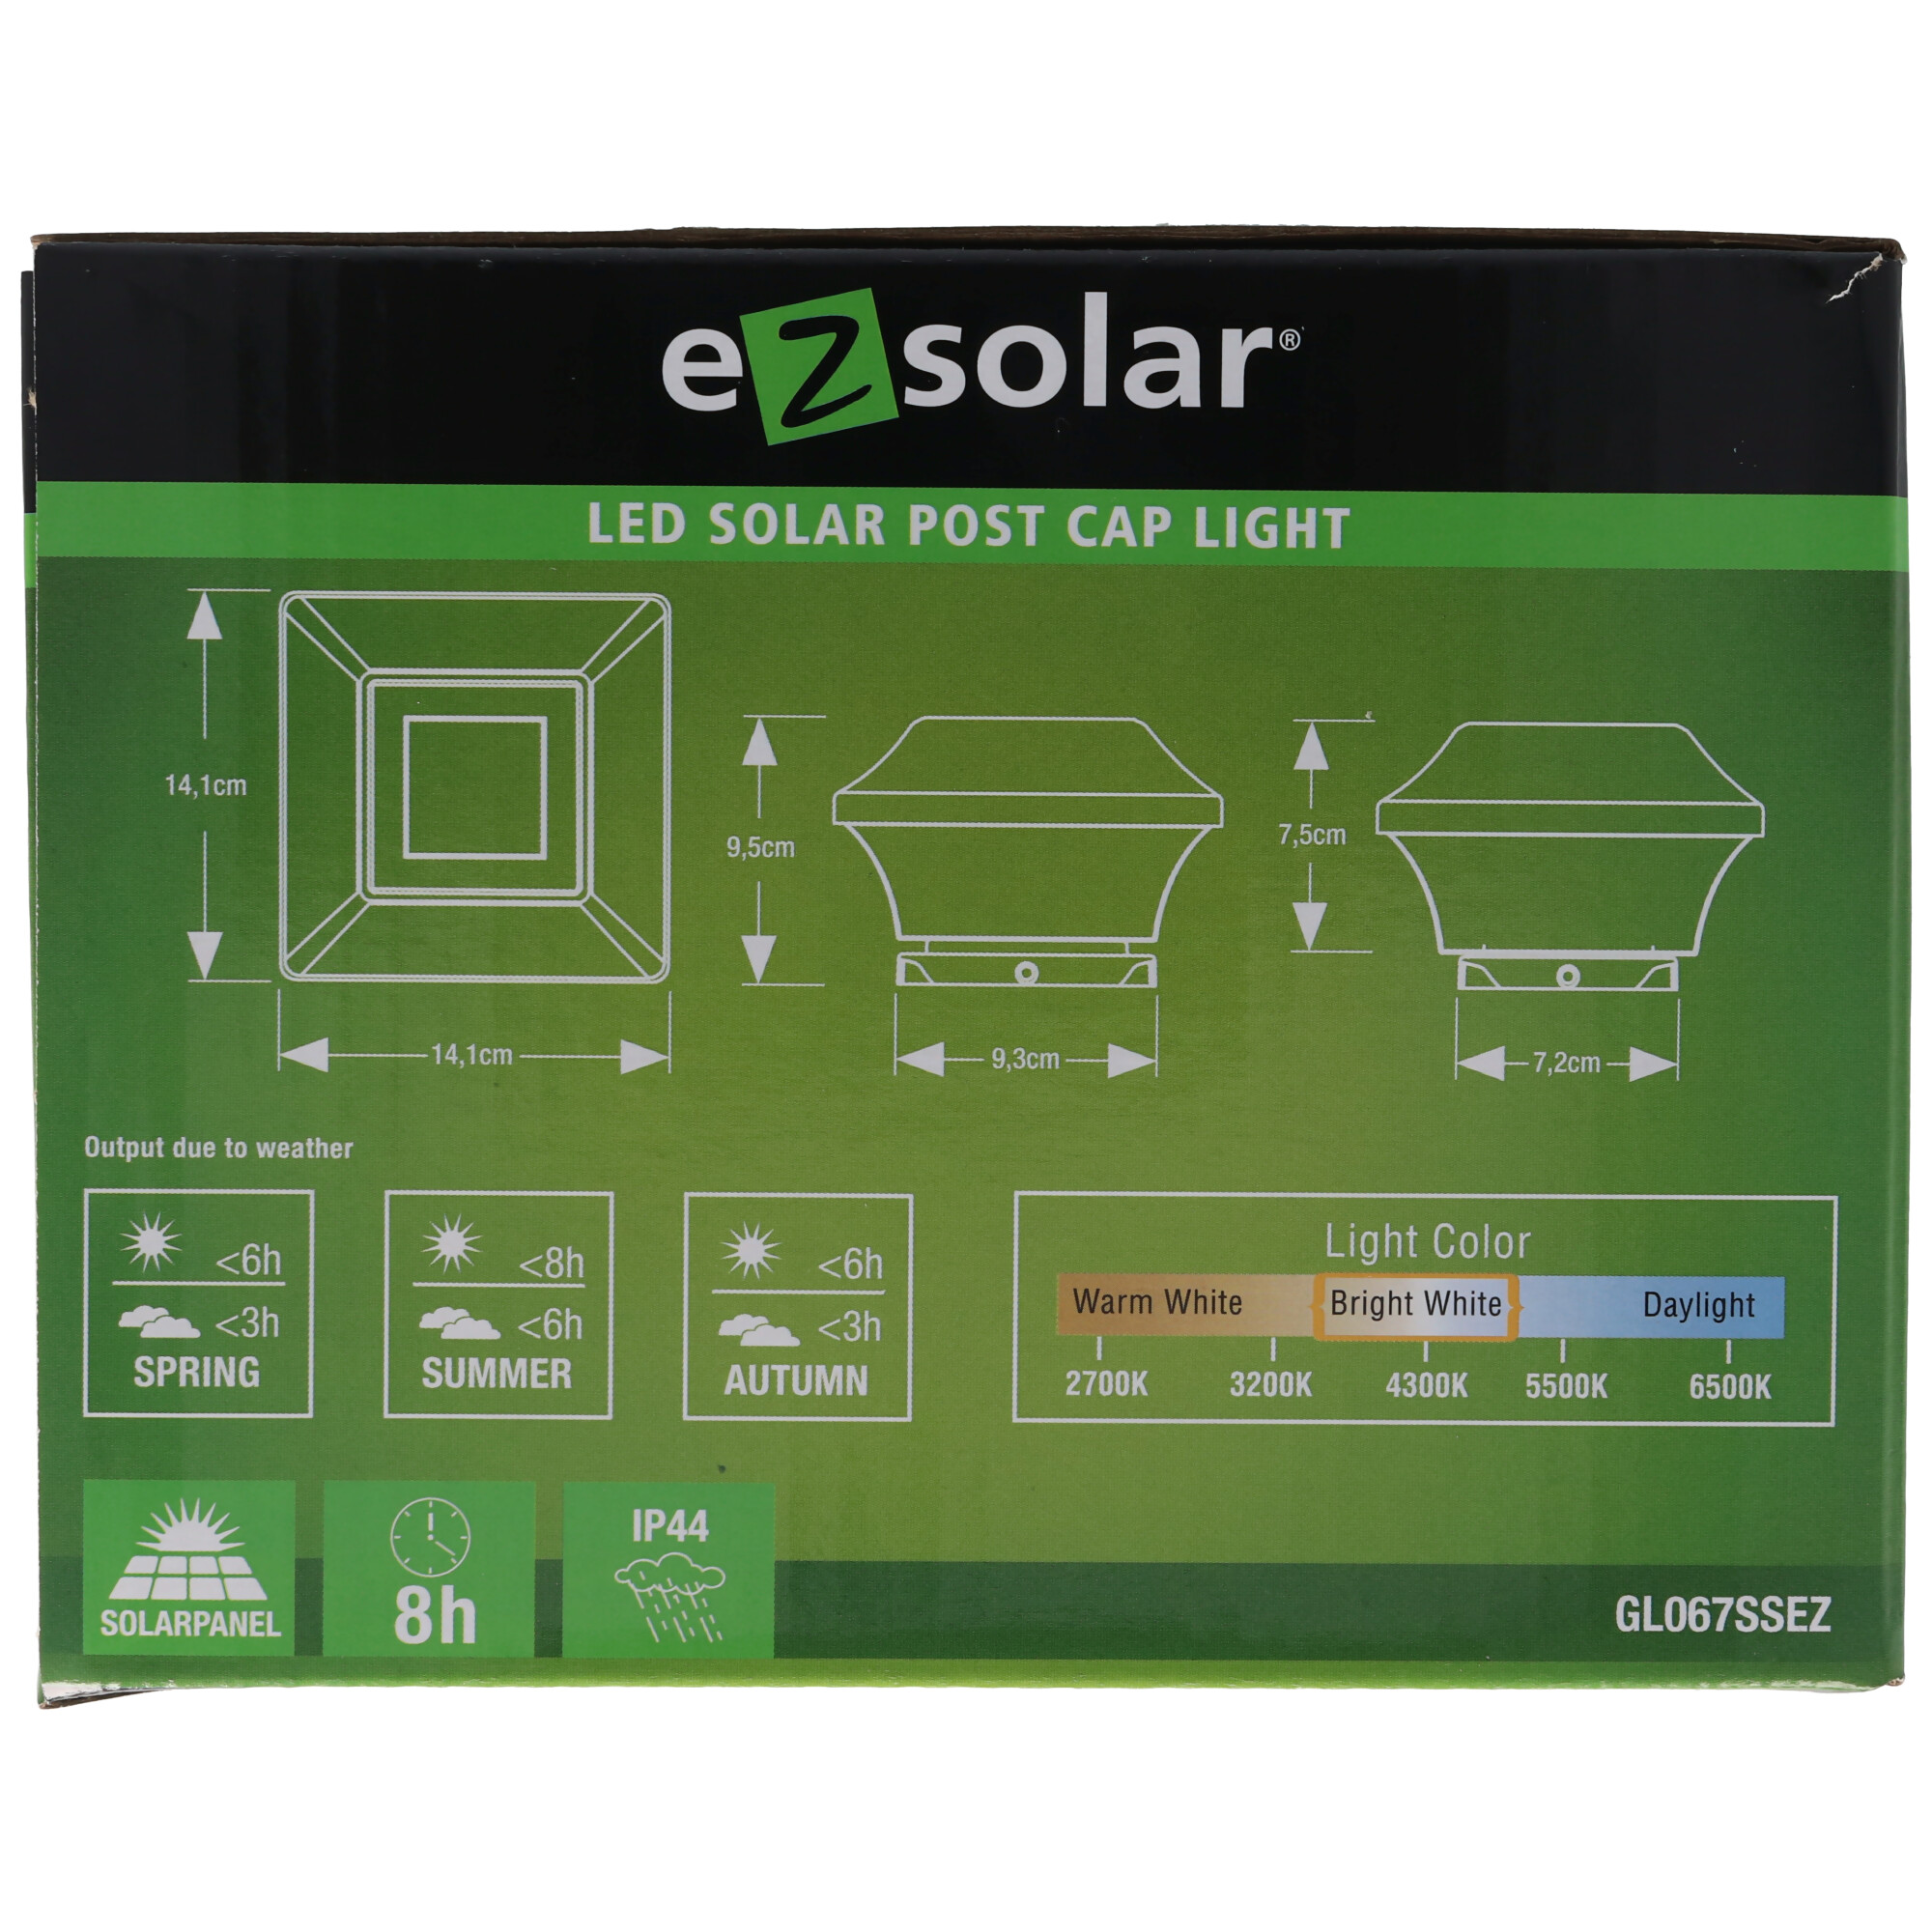 Zaunpfostenleuchte Solar LED Leuchte für Zaunpfähle, Garten Pfostenkappen, Zaunpfosten bauähnlich GL067SSDU in Edelstahl und Kunststoff mit 2 Adaptern